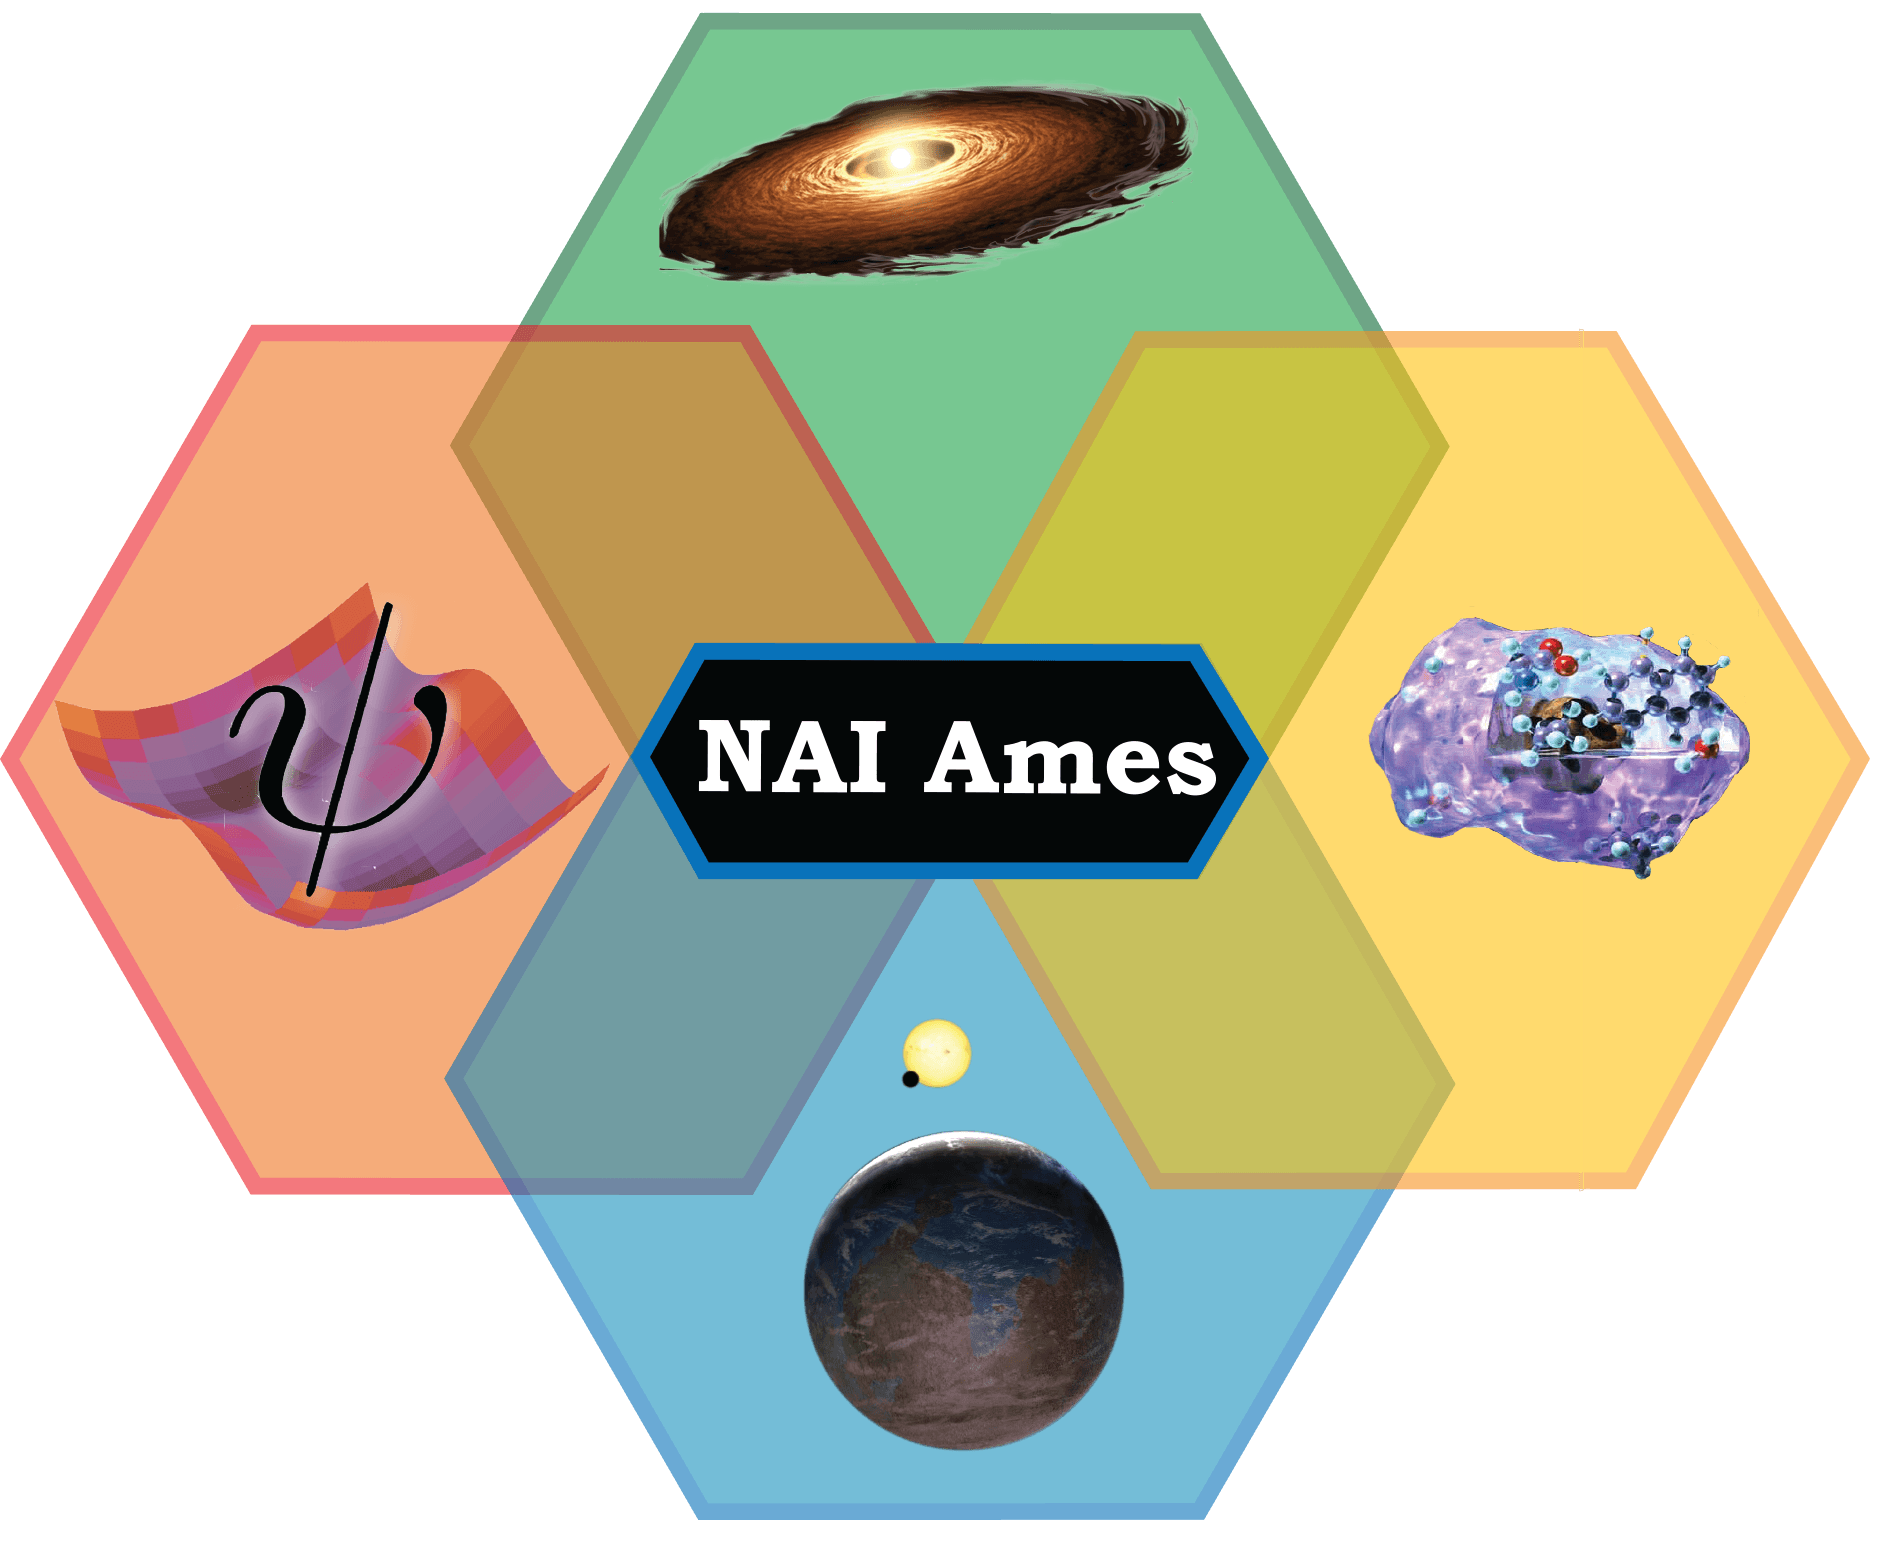 NASA Ames Logo - NASA Ames Research Center